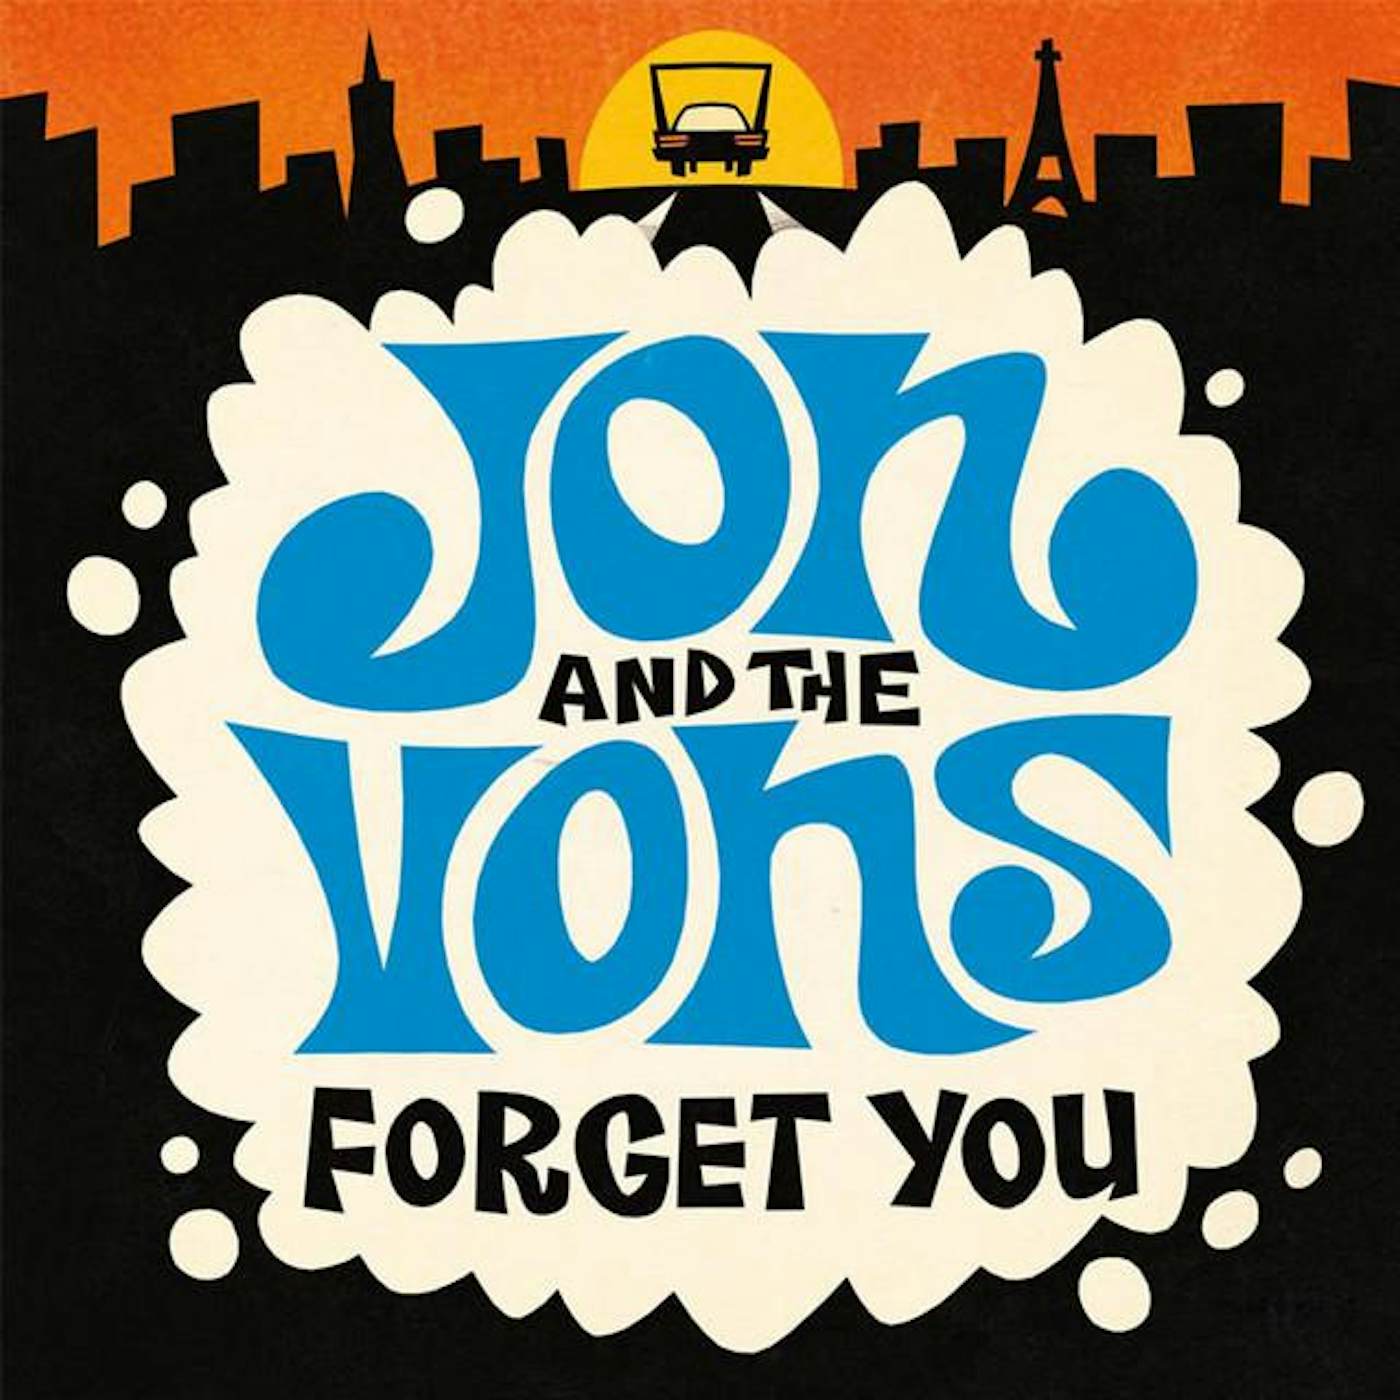 Jon & The Vons